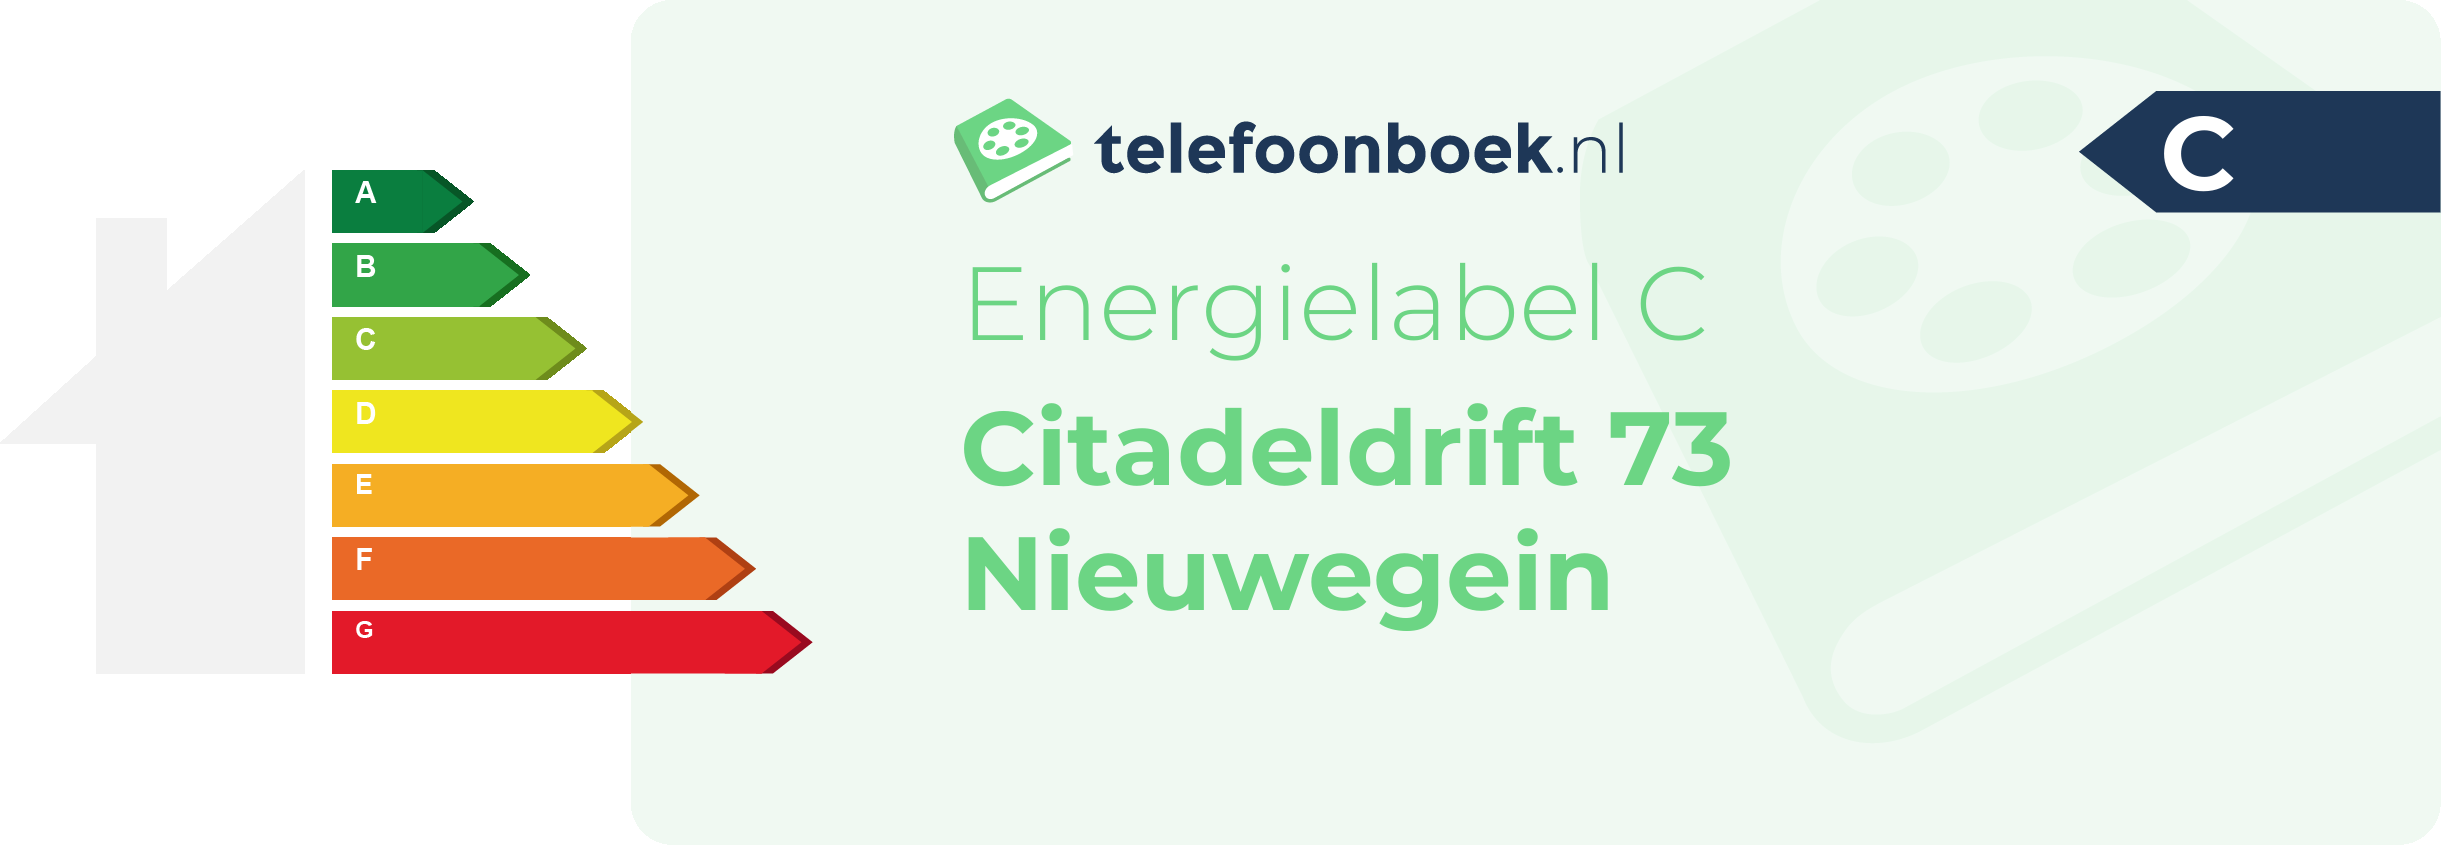 Energielabel Citadeldrift 73 Nieuwegein